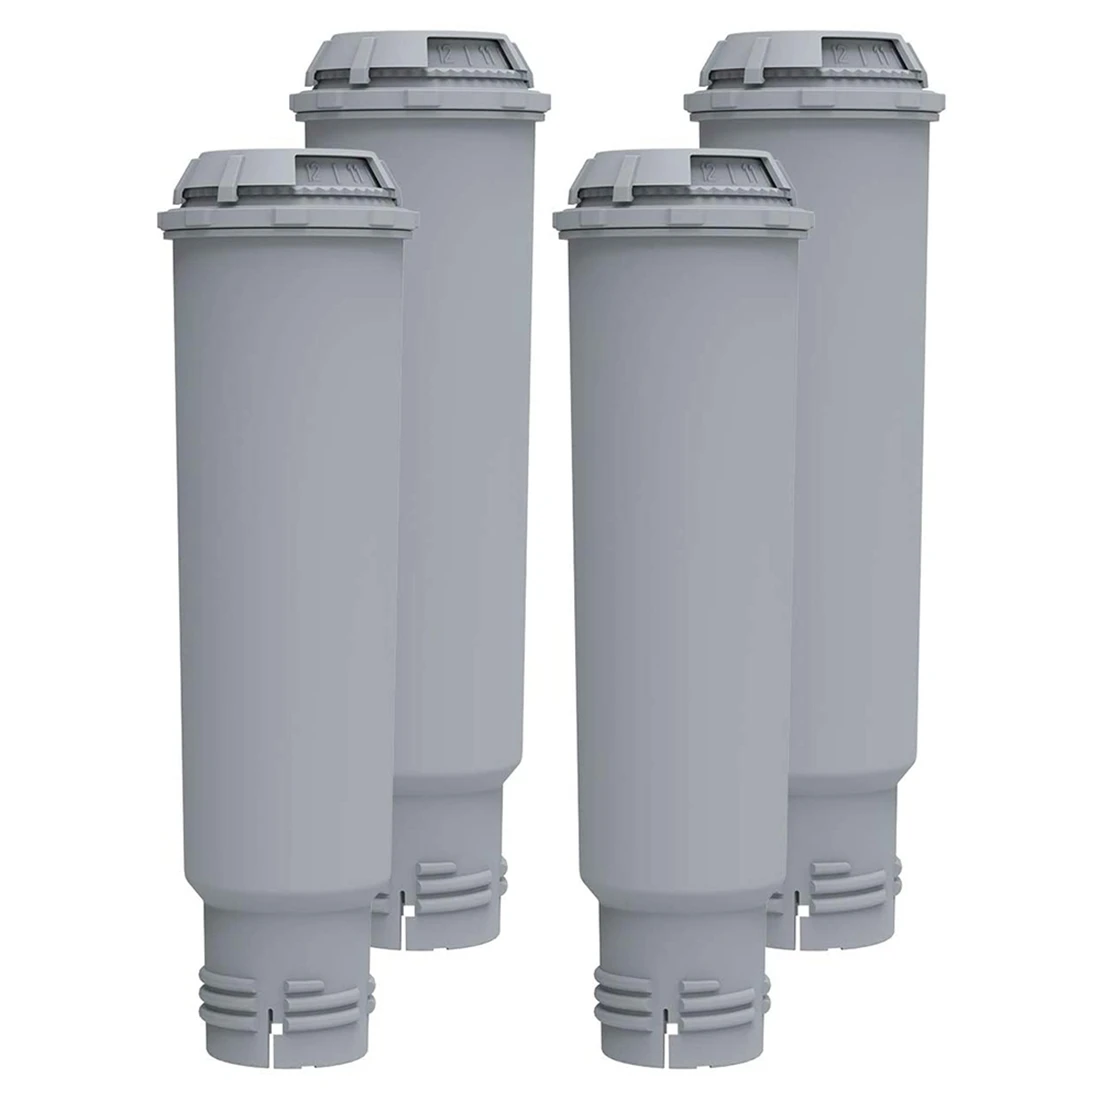 

Фильтр для воды для эспрессо Krups Claris F088, набор фильтров для Siemens, Bosch, Nivona, gagсветaeg Neff, 4 шт.